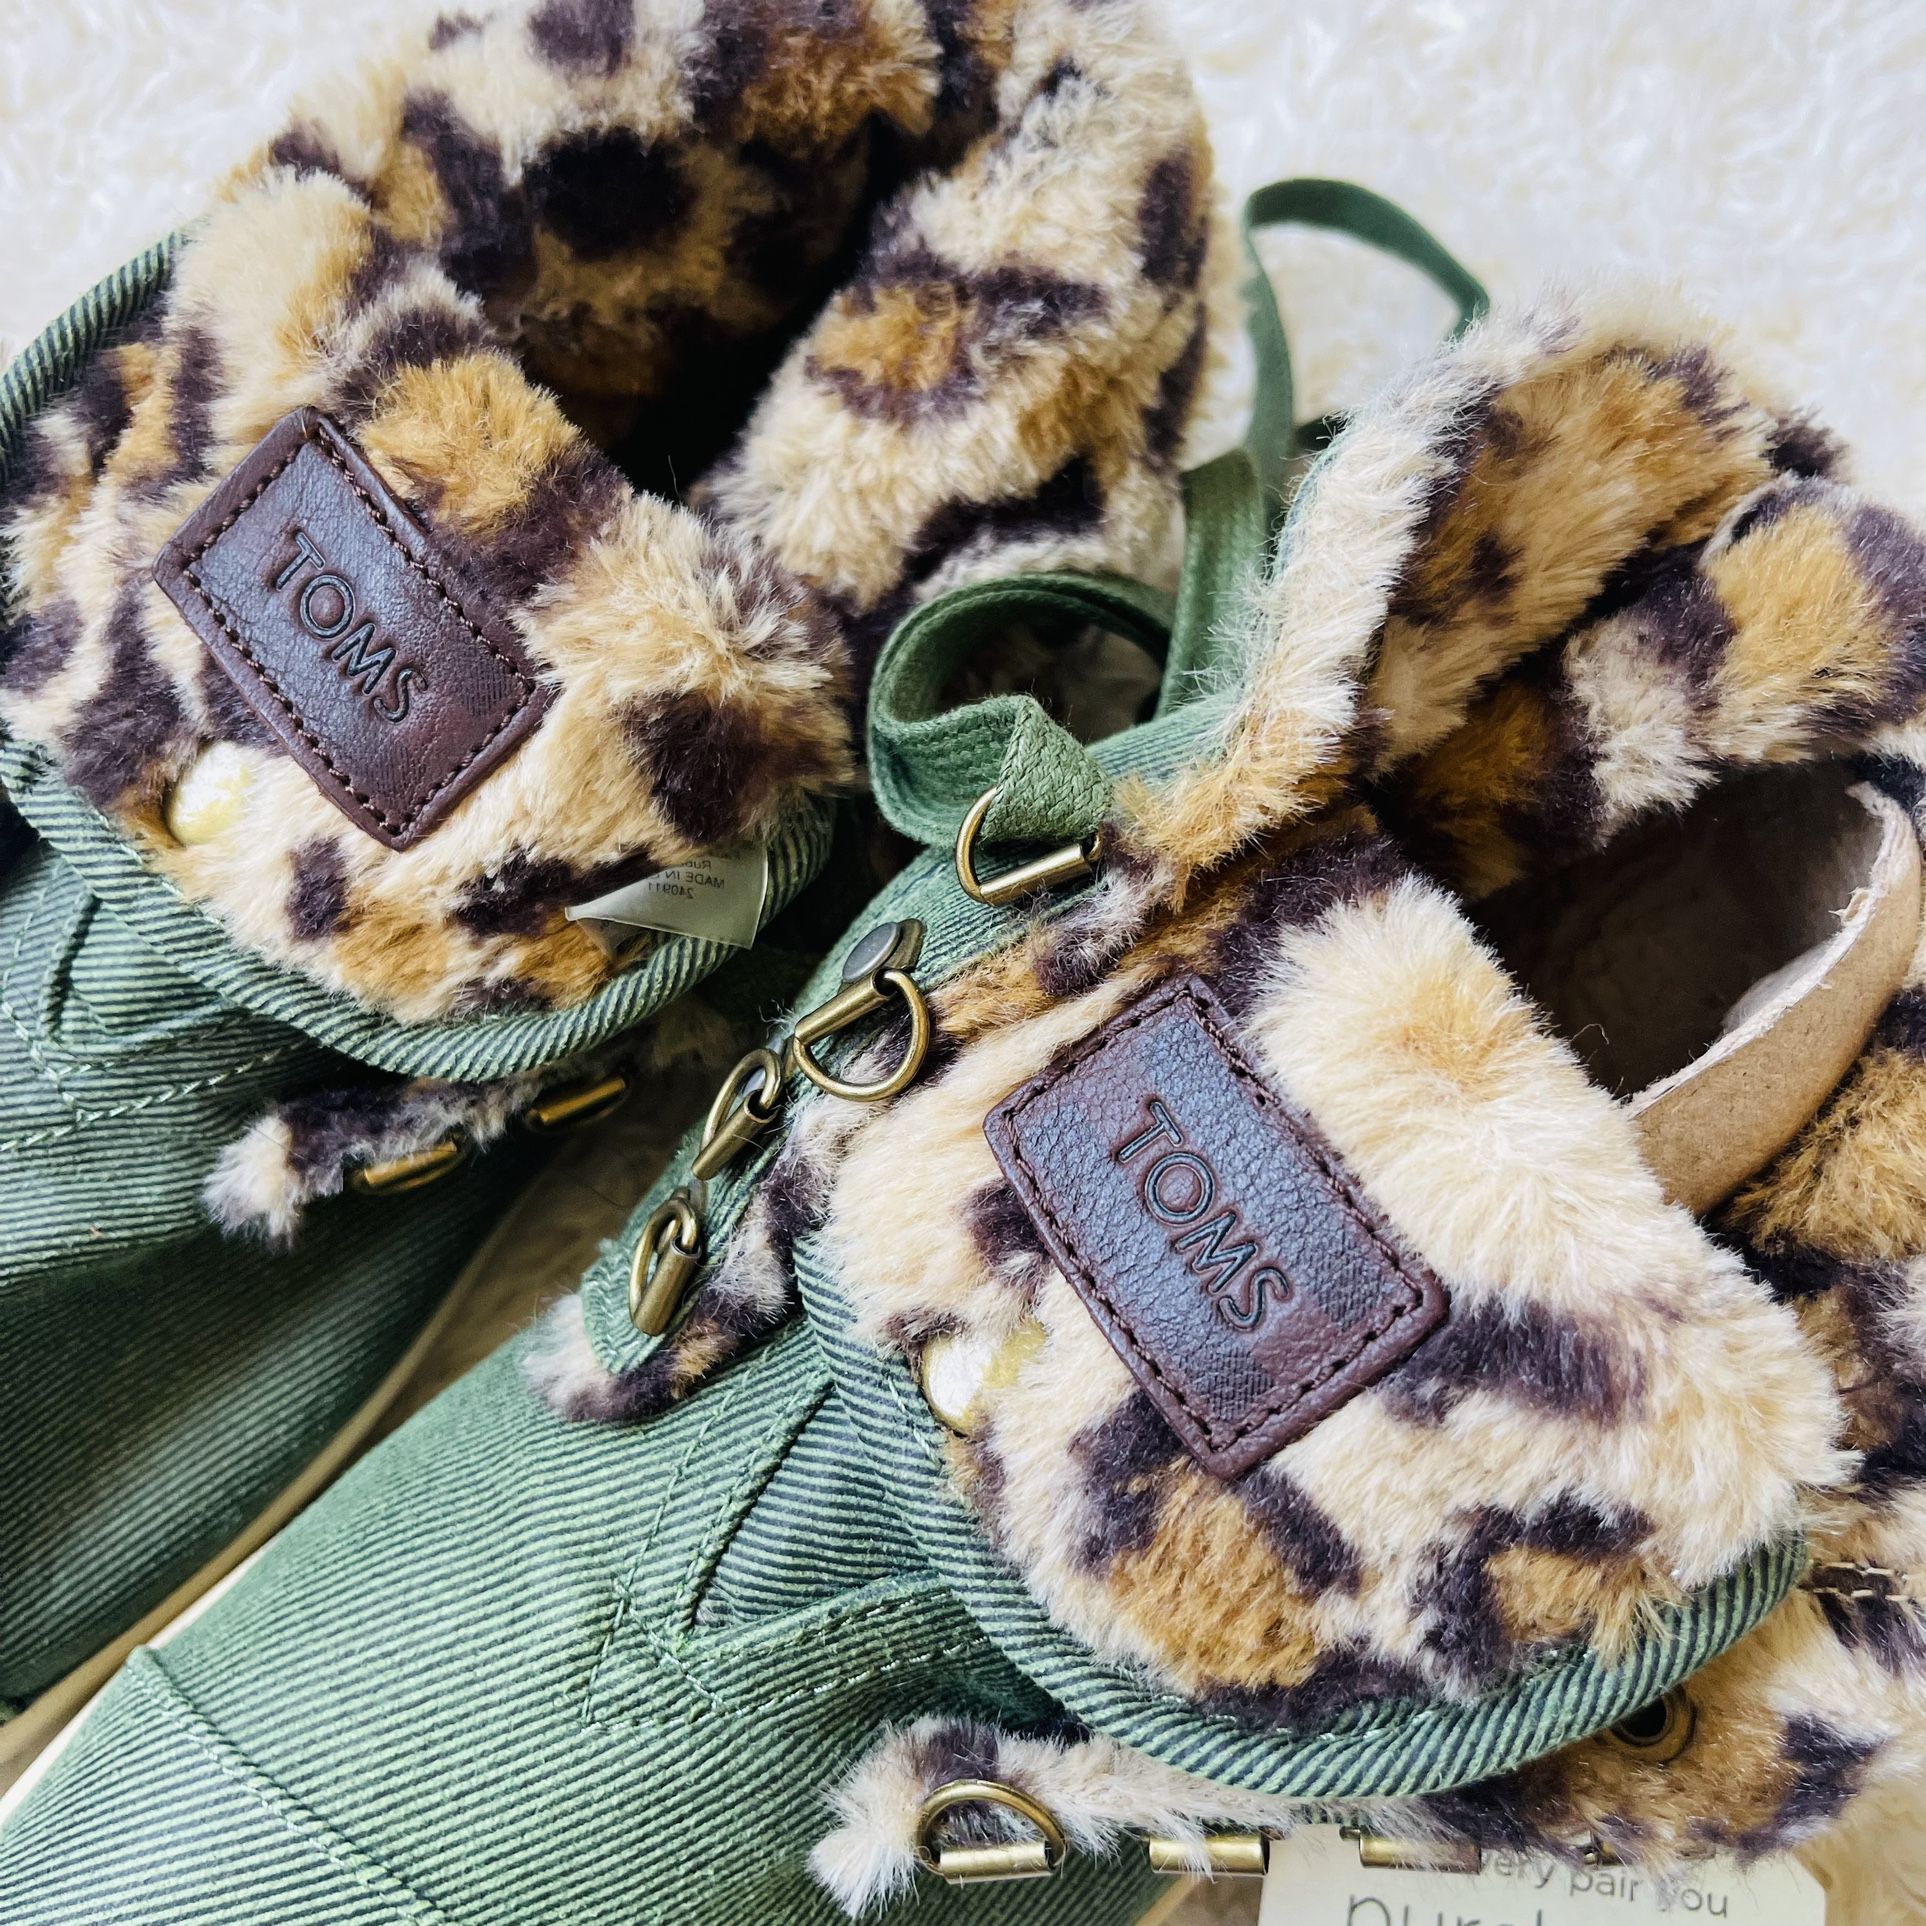 TOMS Women Highland Botas Boots Sz 8.5 Green Leopard Faux Fur Trim Lining Lace U